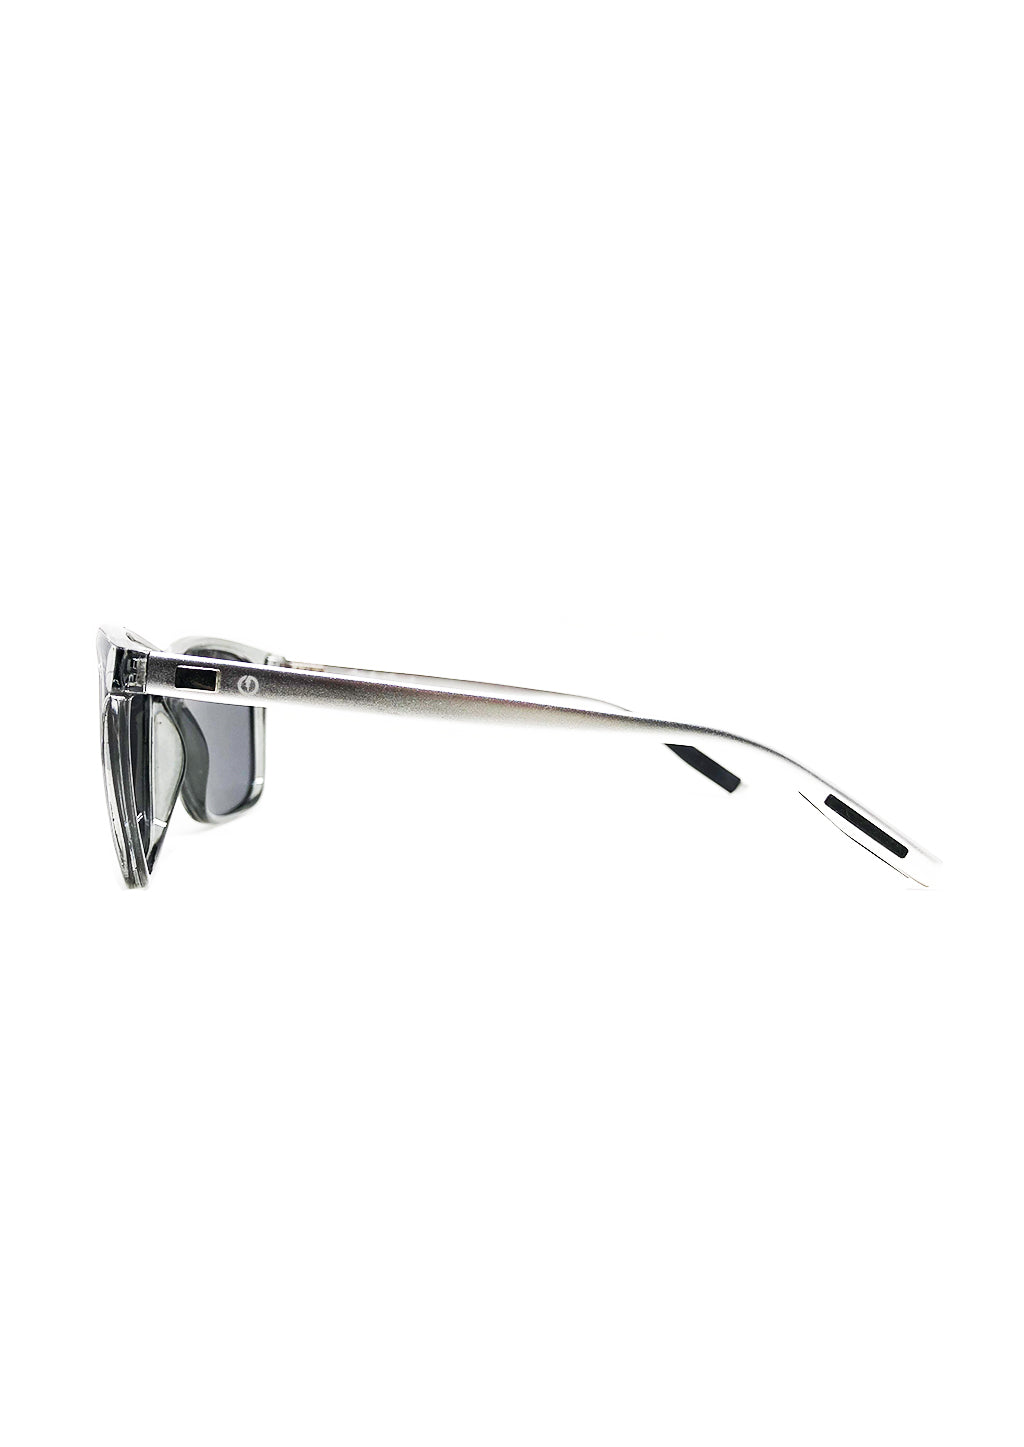 Soho Wayfarer sunglasses - Details